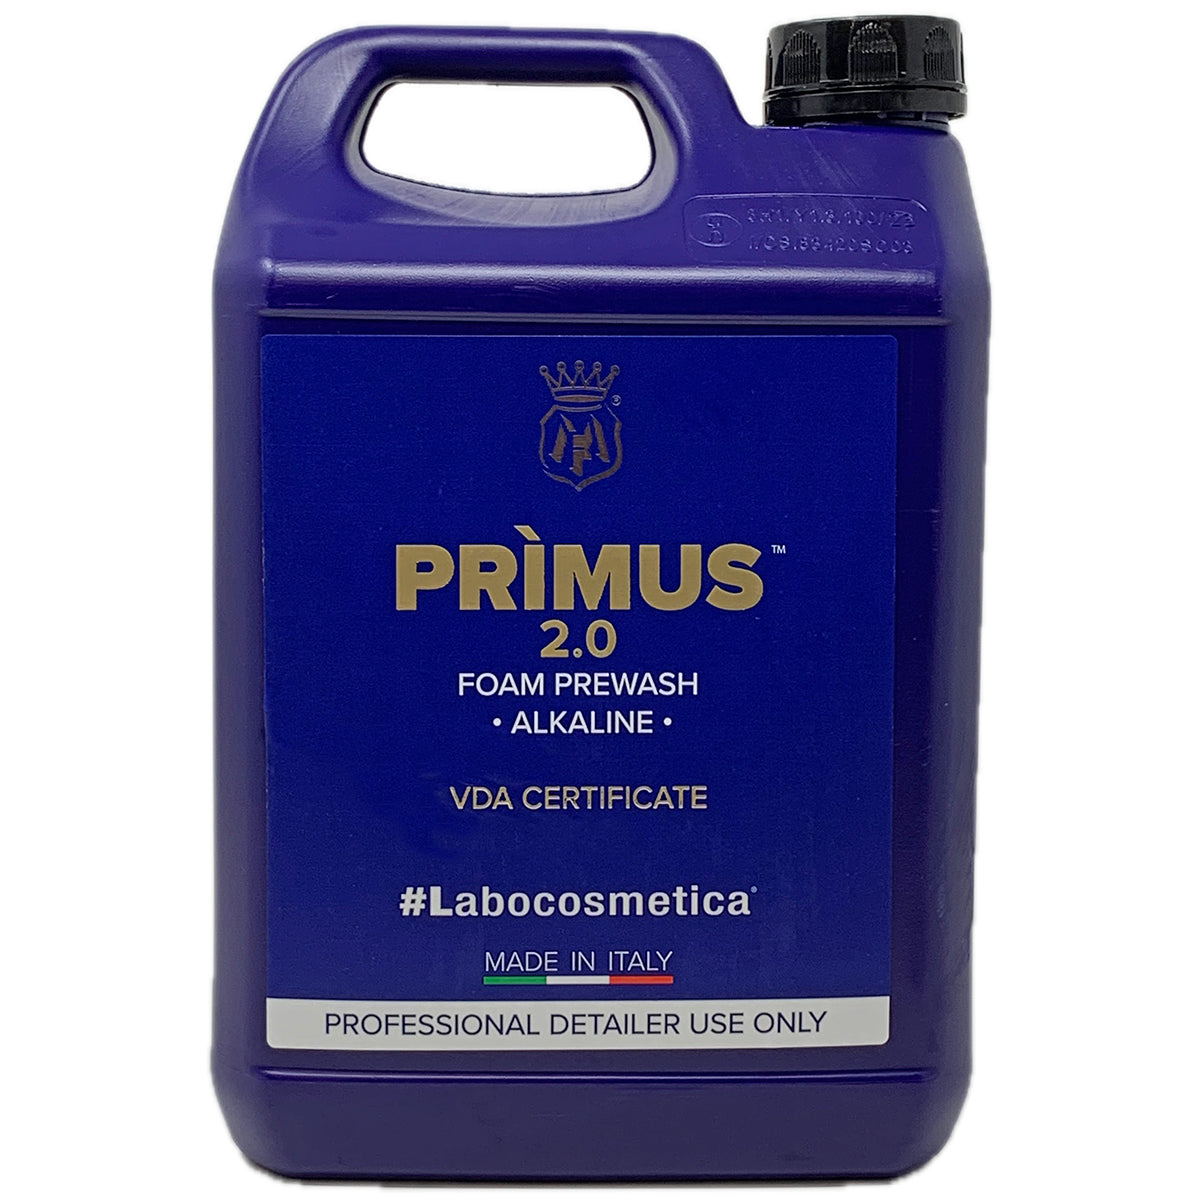 #Labocosmetica #Primus 2.0 (Foam Pre-Wash)